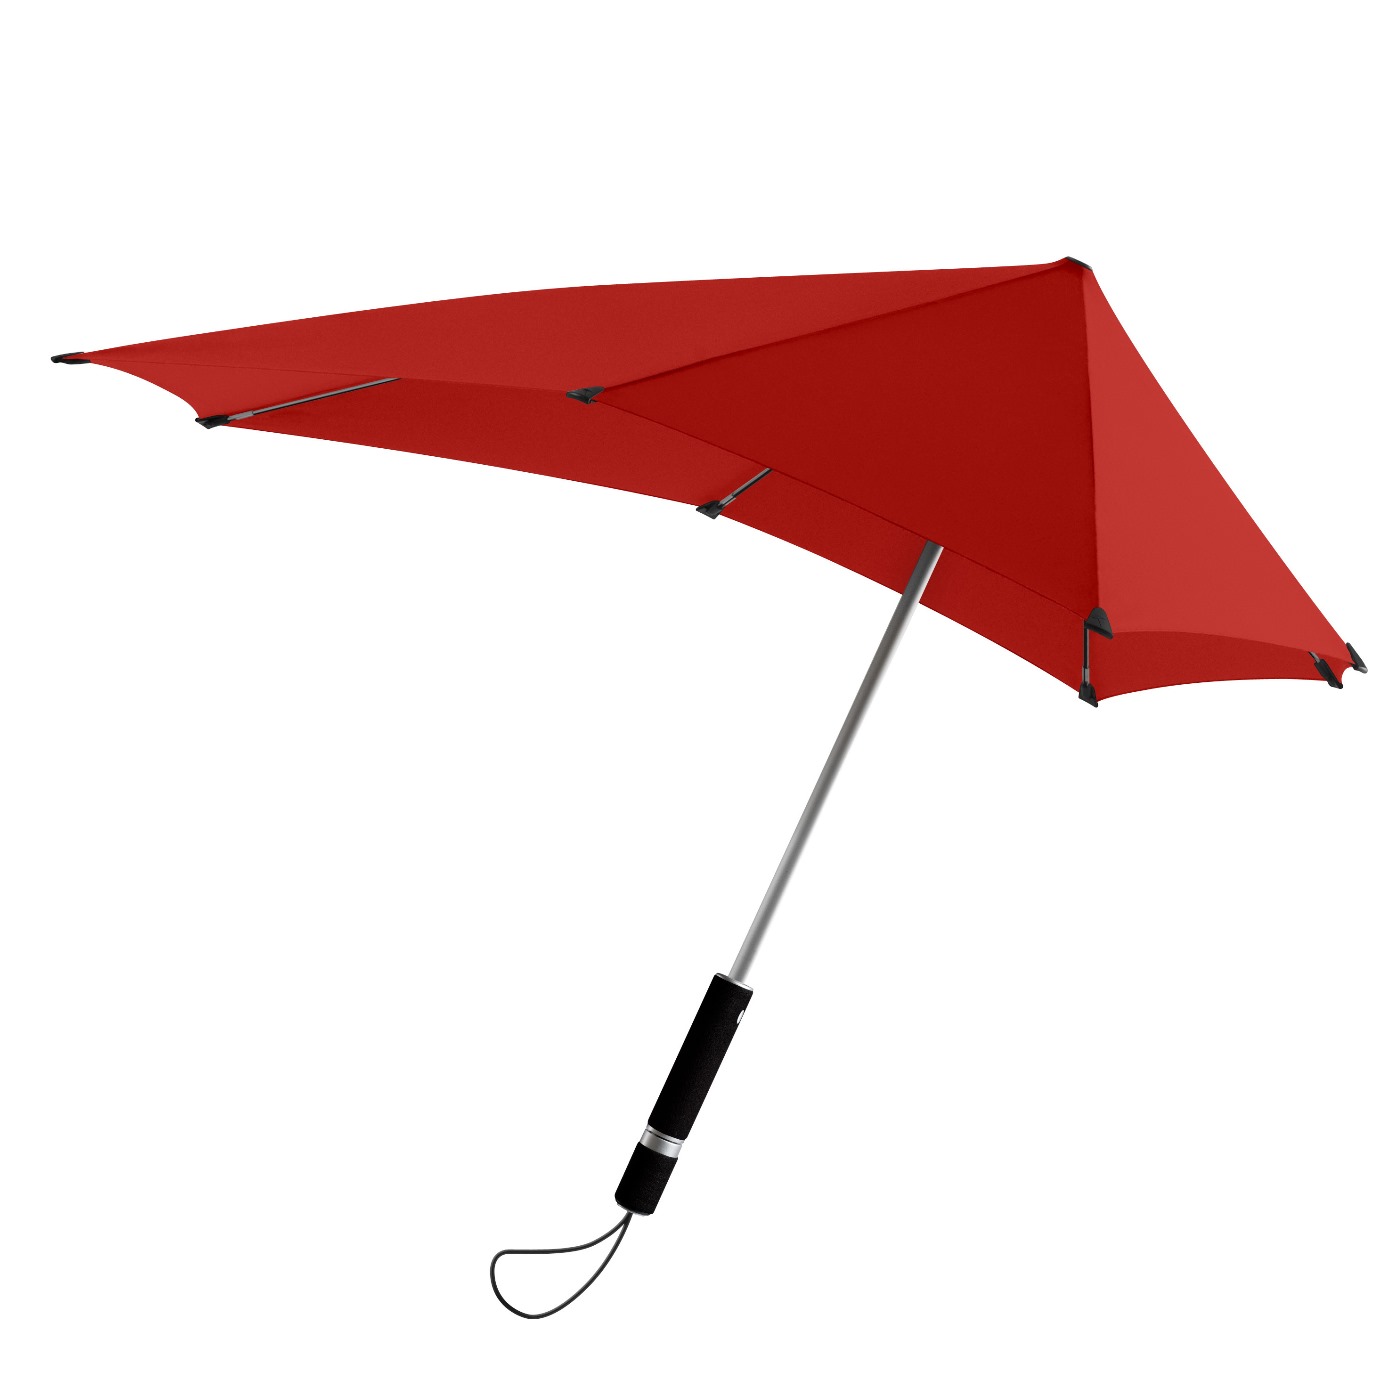 Зонтик брать. Senz Umbrella зонт. Противоштормовой зонт senz. Зонт штормовой senz. Зонт-трость SSANGYONG Stick Umbrella, XL, Black.